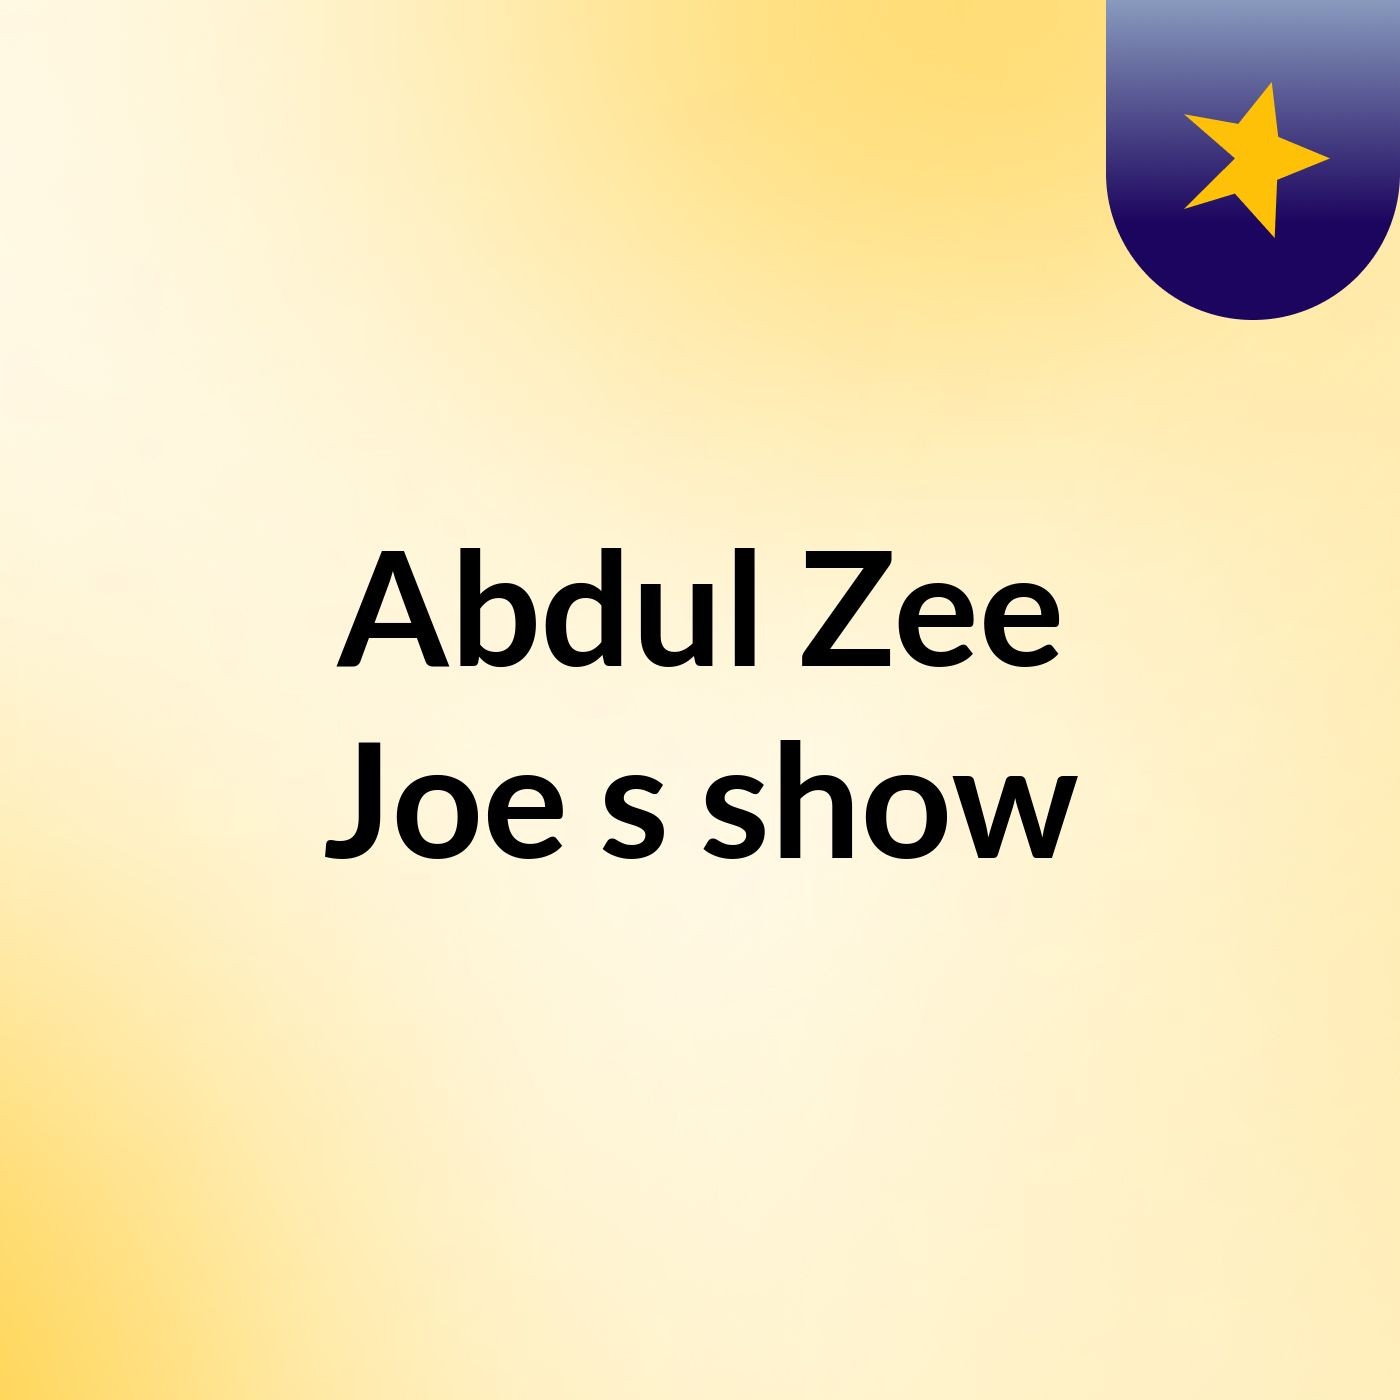 Episode 3 - Abdul Zee Joe's show